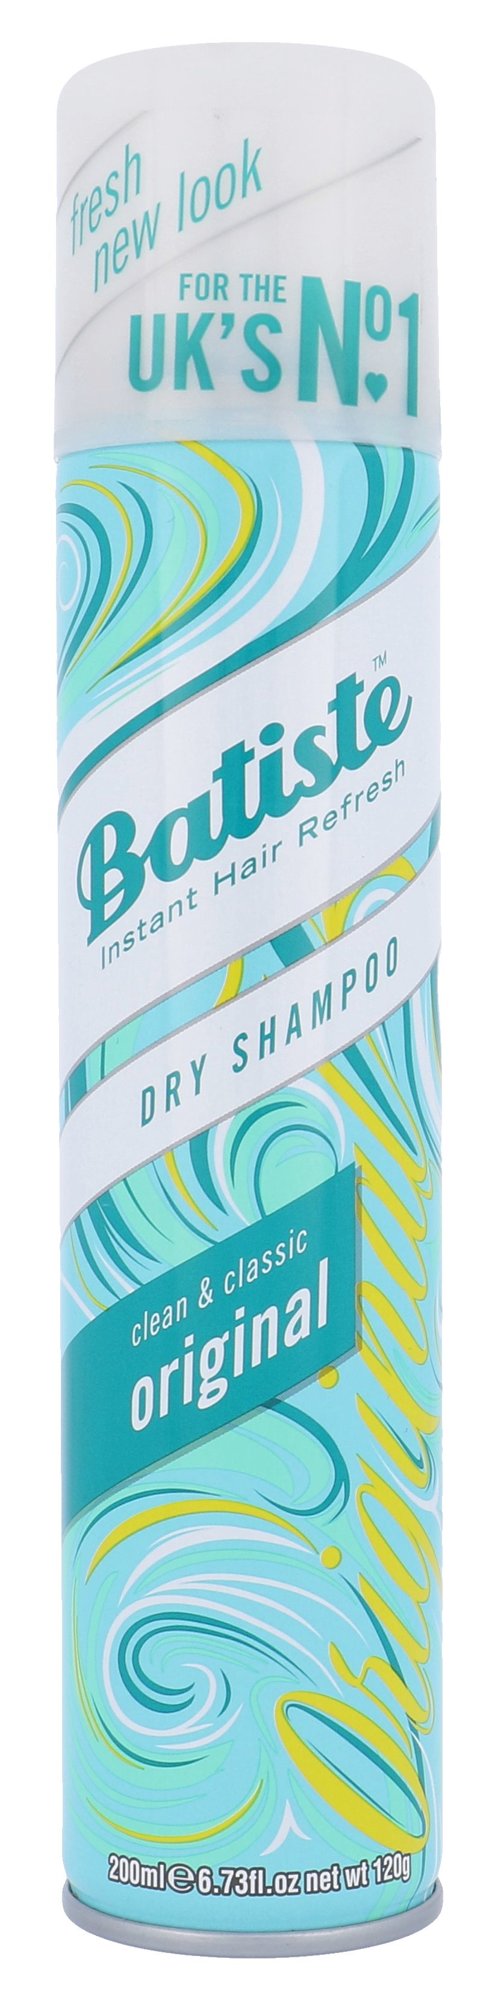 Batiste Original sausas šampūnas